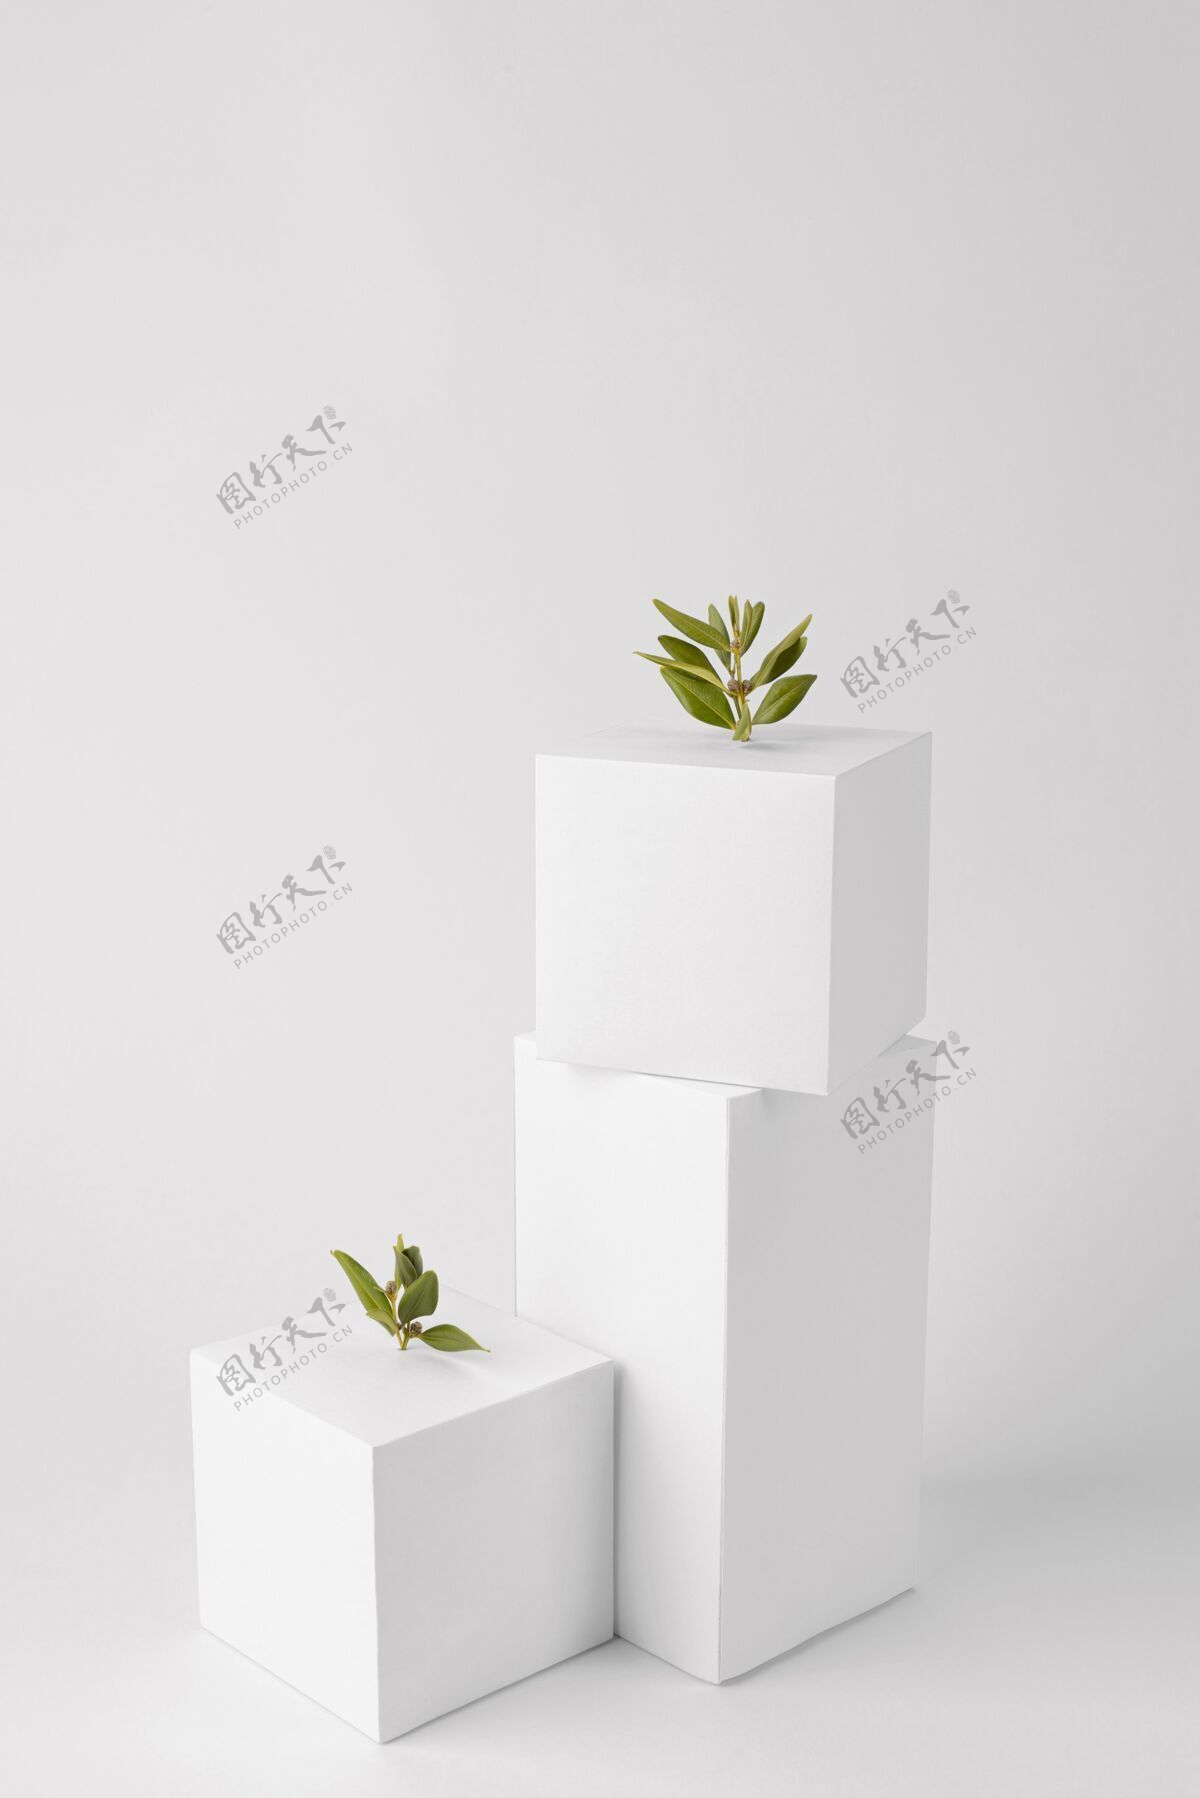 垂直几何形态和植物生长的可持续性概念高角度绿化空白